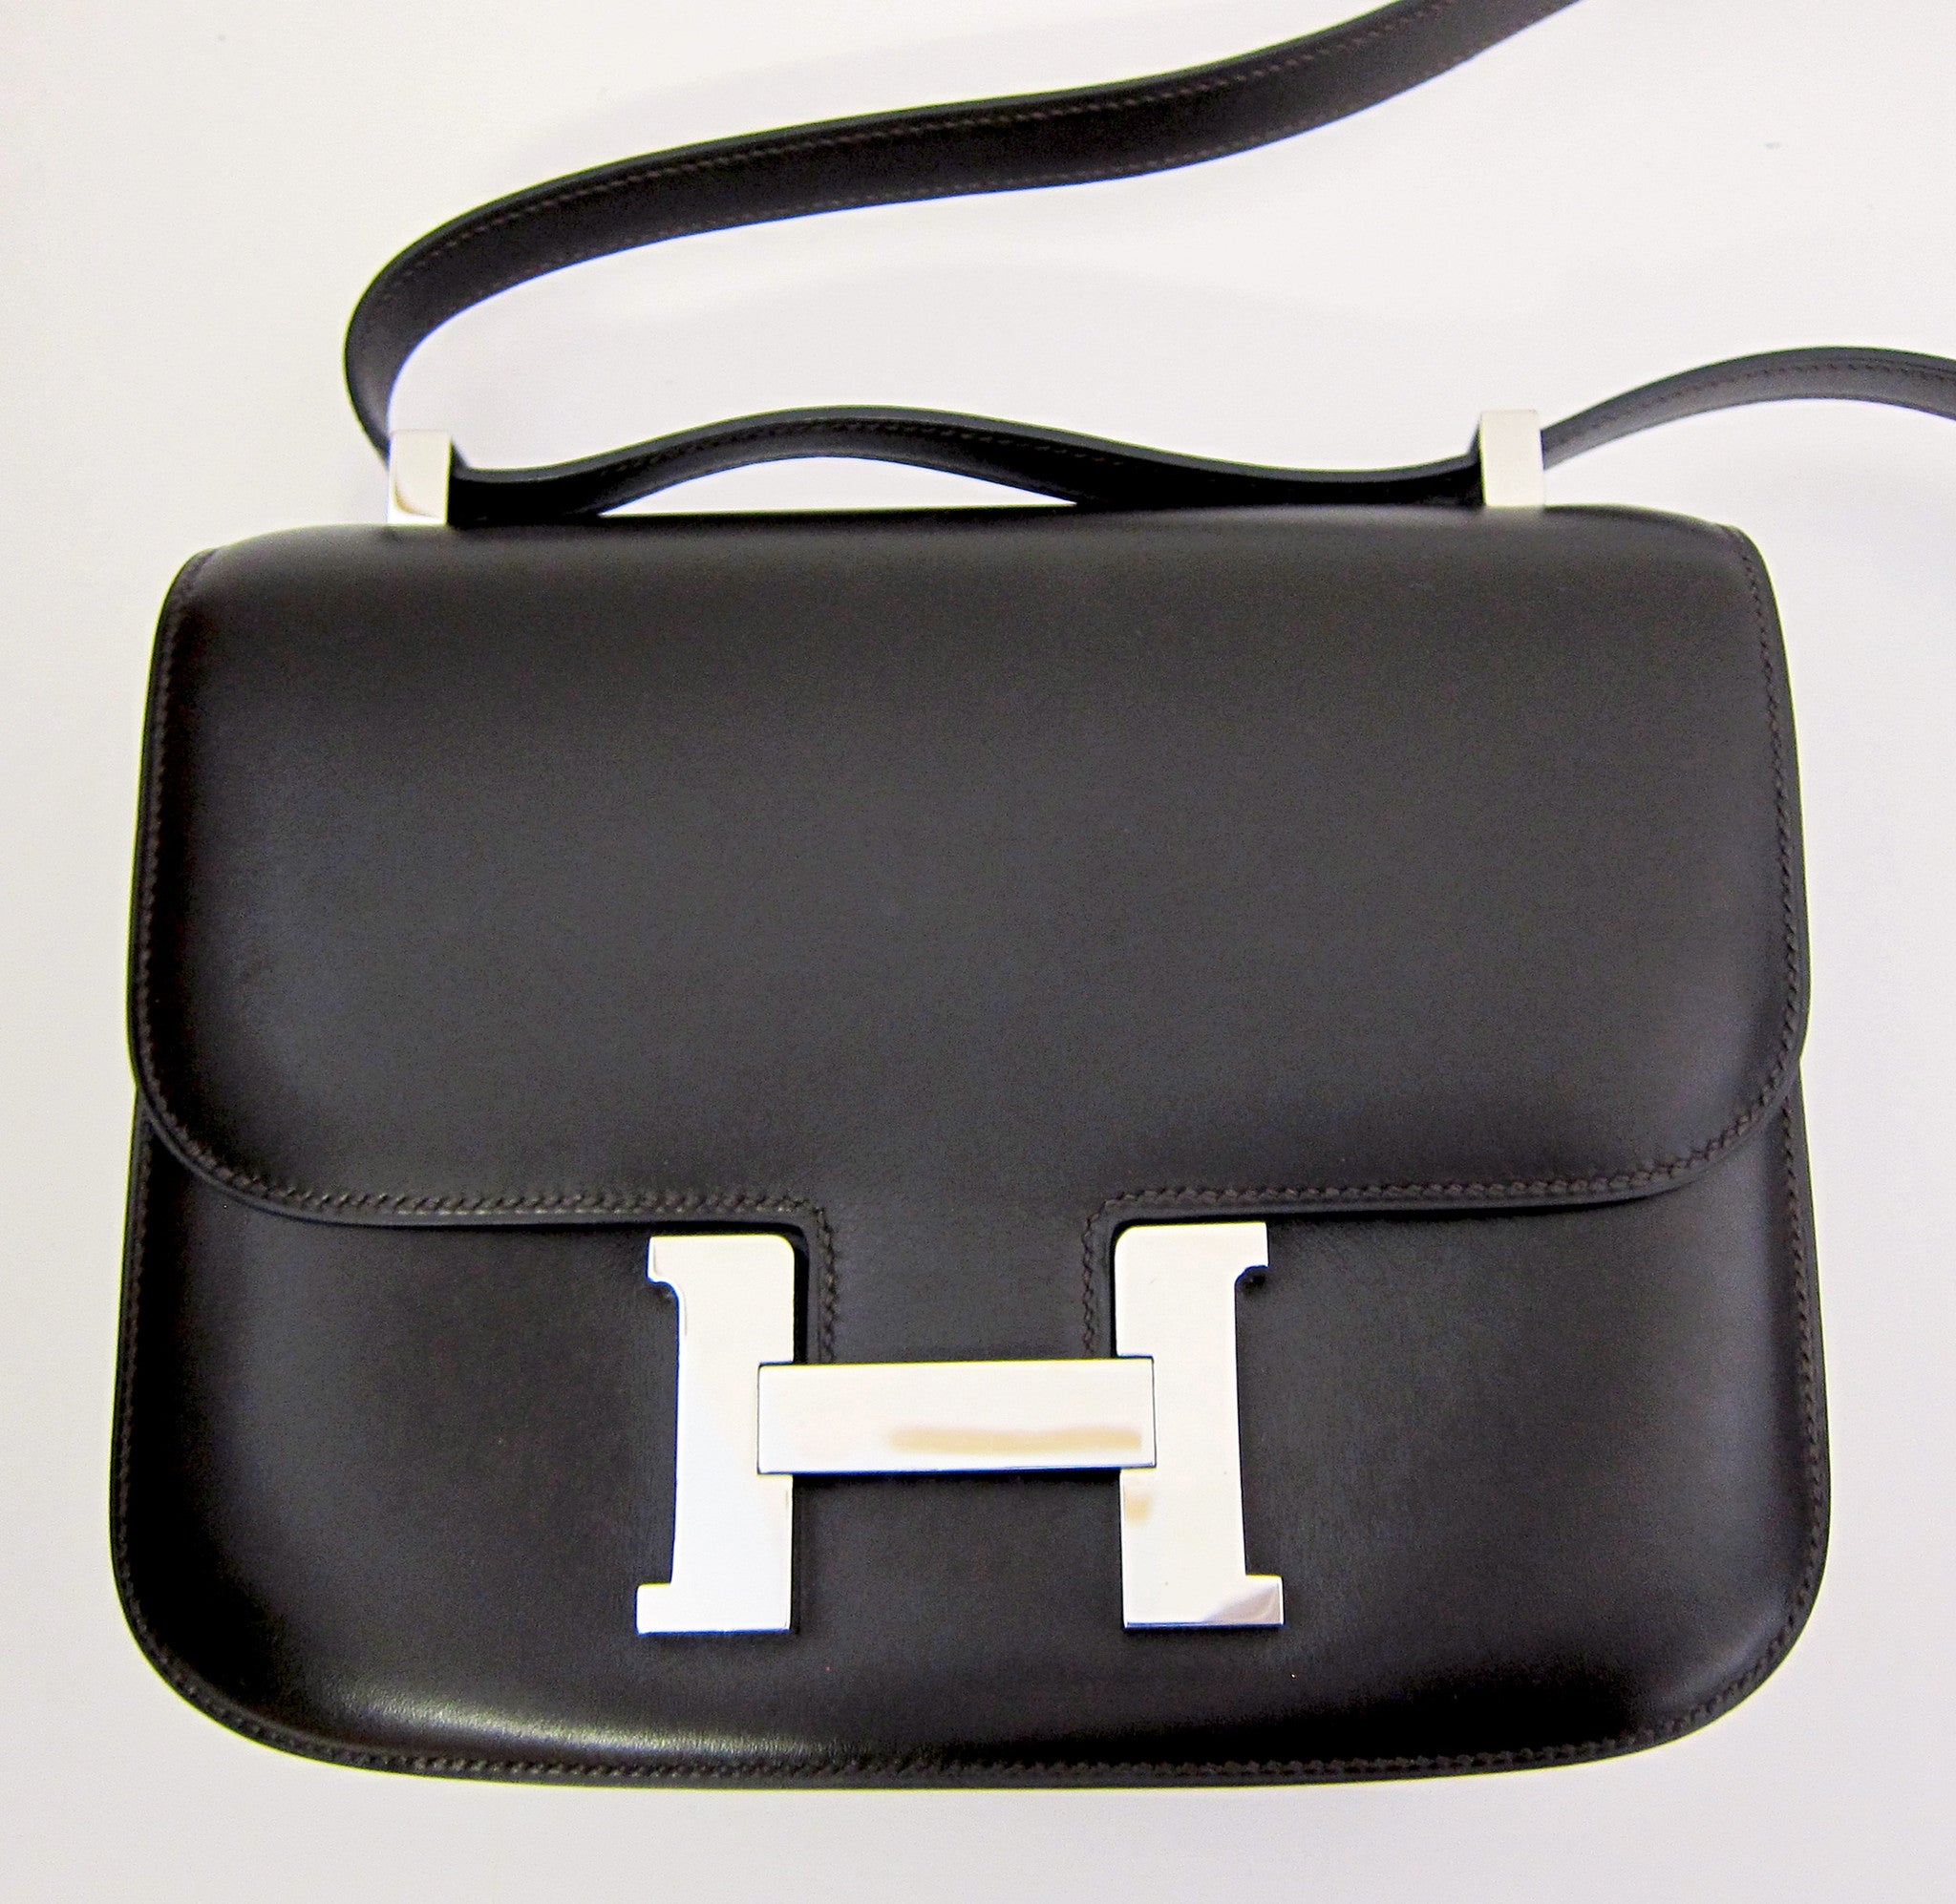 Hermes Exquisite Saint Louis Crystal Leather Petit H Pendant World Exc -  Chicjoy